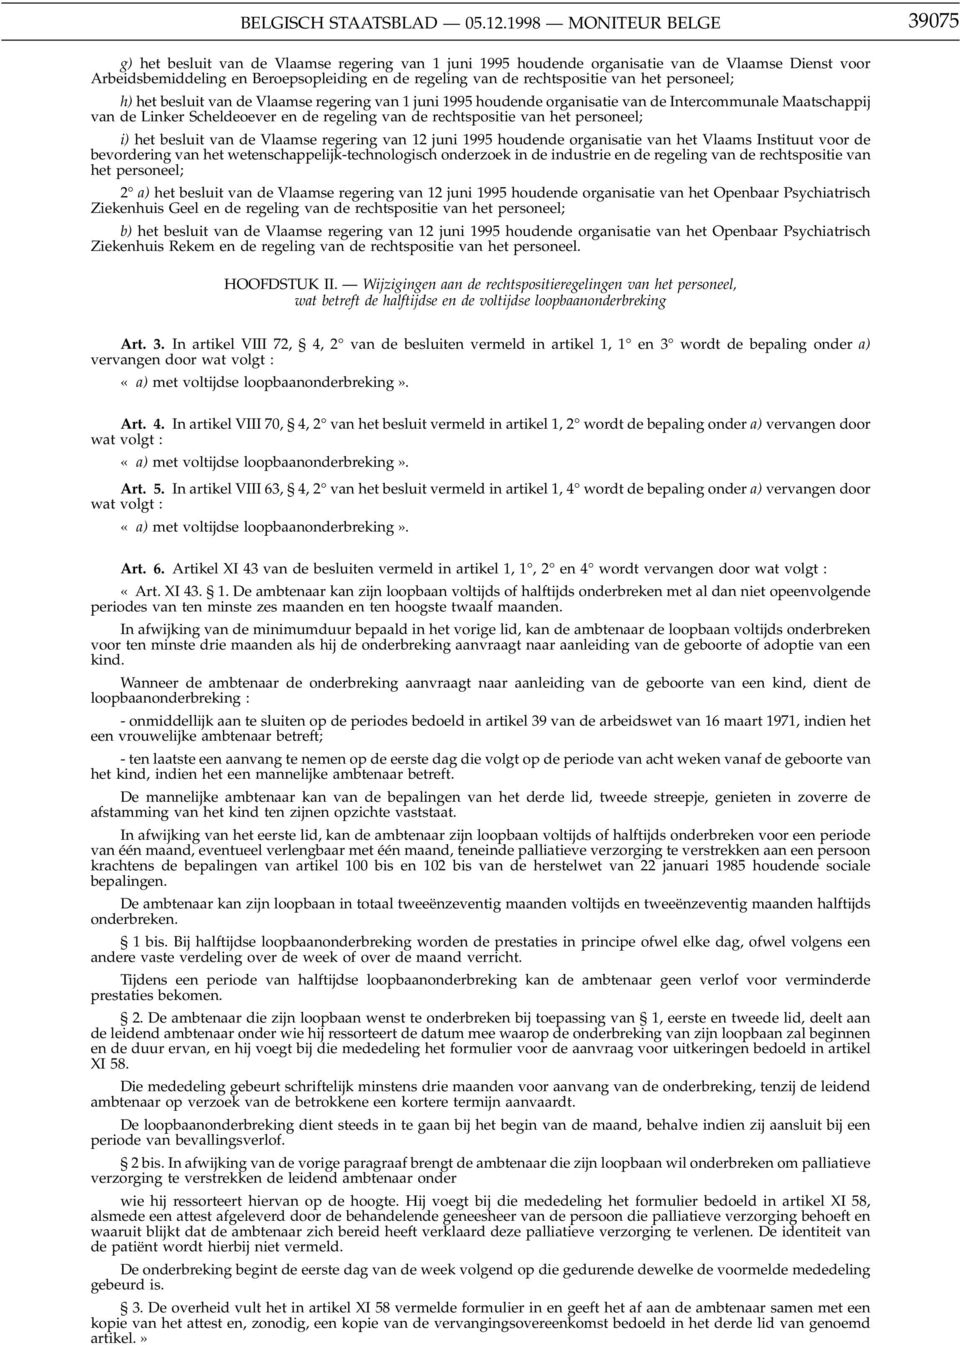 rechtspositie van het personeel; h) het besluit van de Vlaamse regering van 1 juni 1995 houdende organisatie van de Intercommunale Maatschappij van de Linker Scheldeoever en de regeling van de